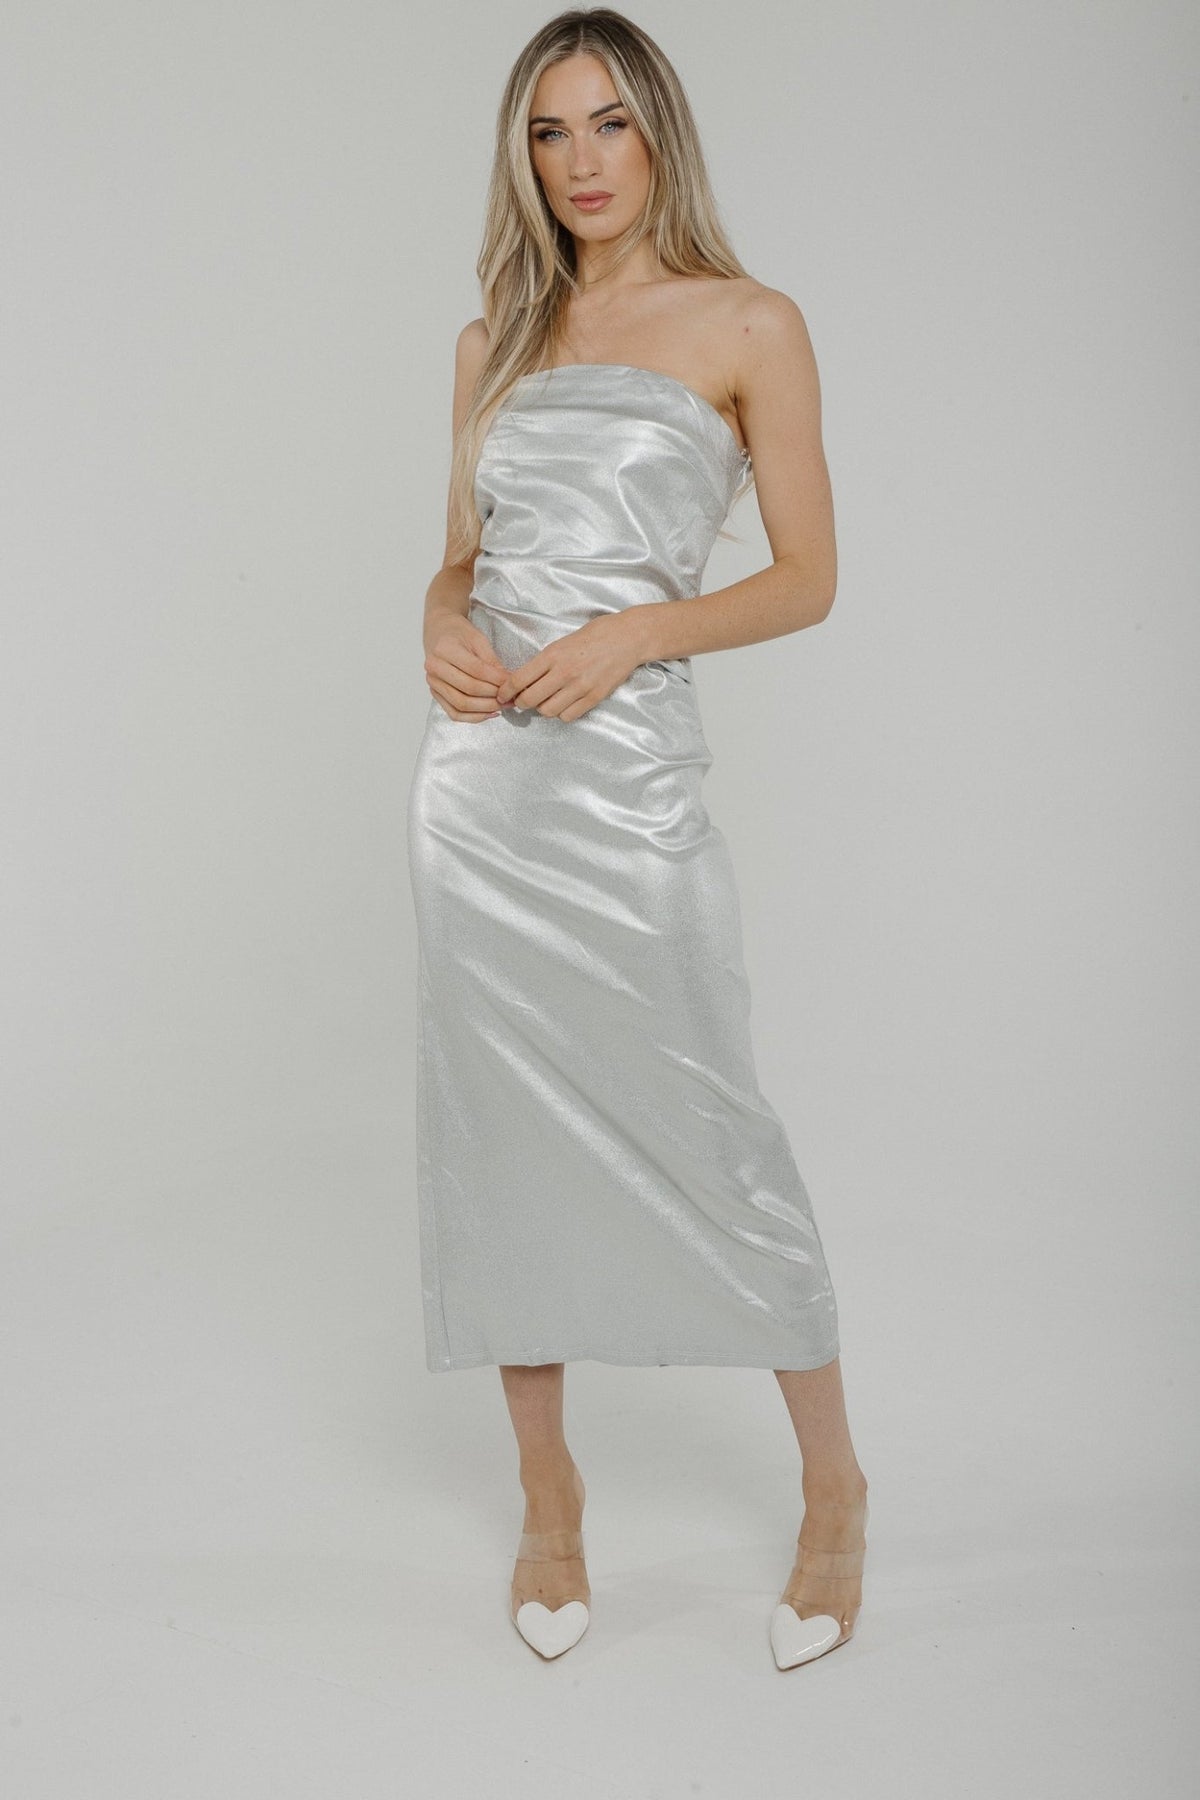 Holly Metallic Bandeau Dress In Silver - The Walk in Wardrobe